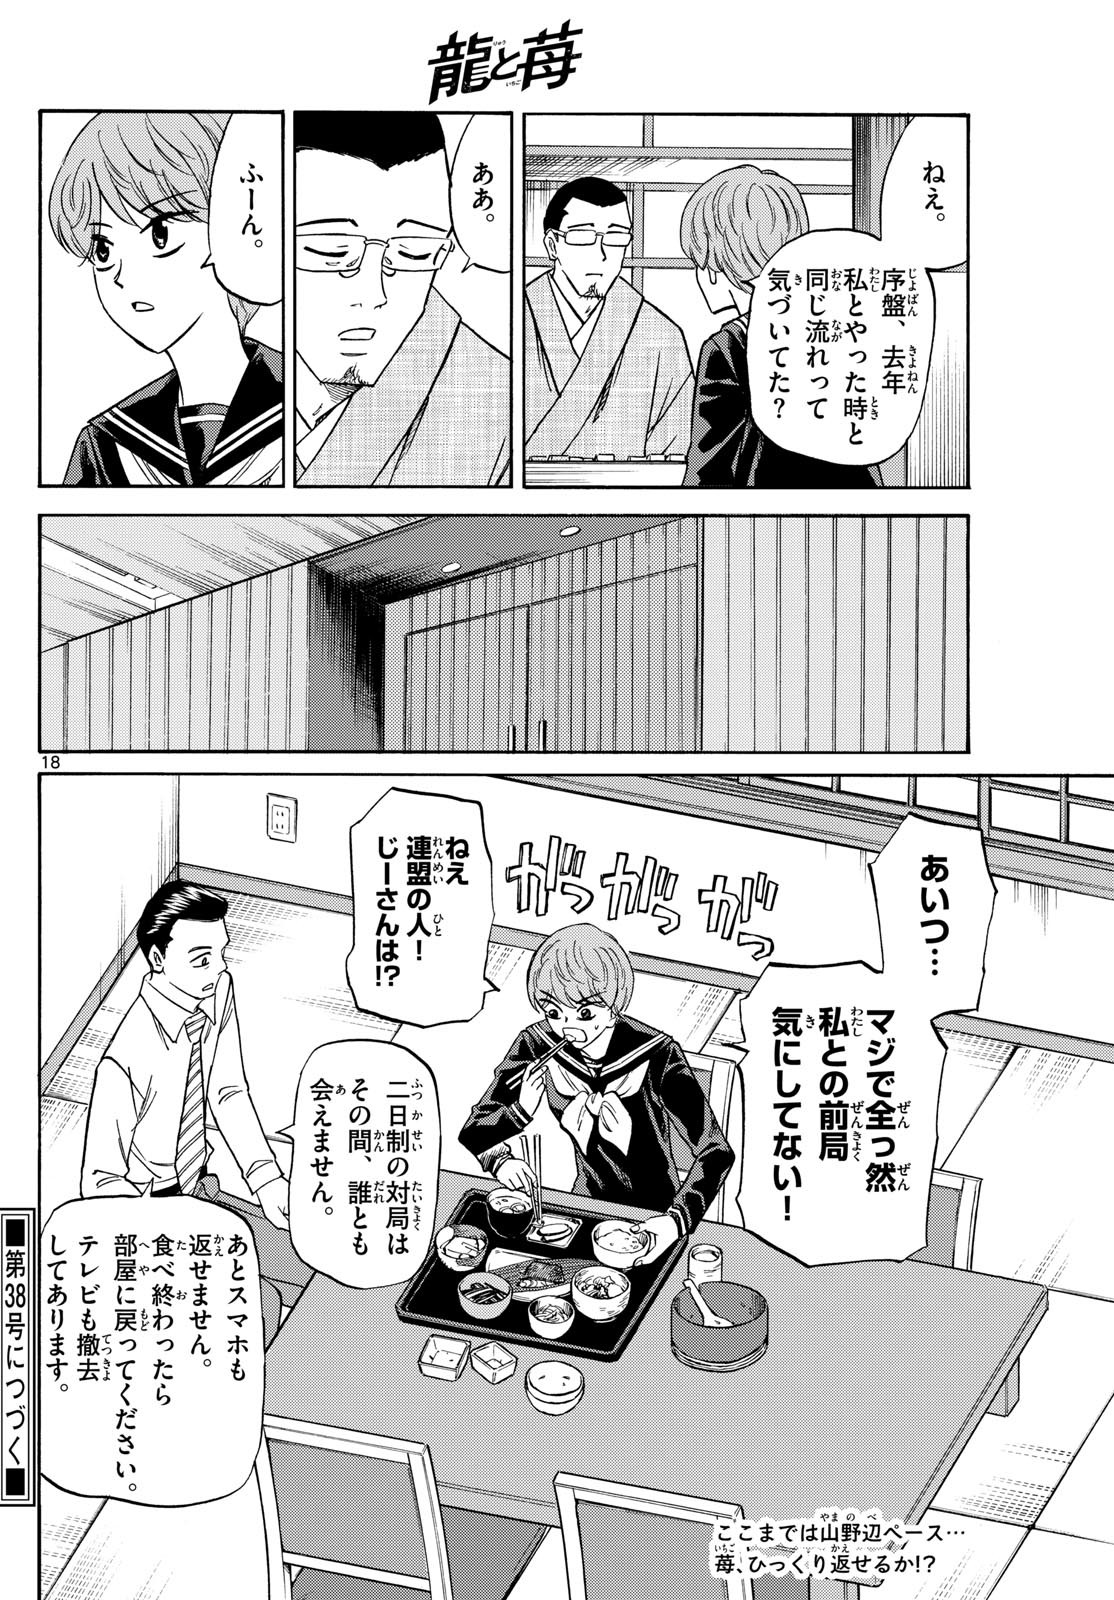 Ryu-to-Ichigo - Chapter 154 - Page 18